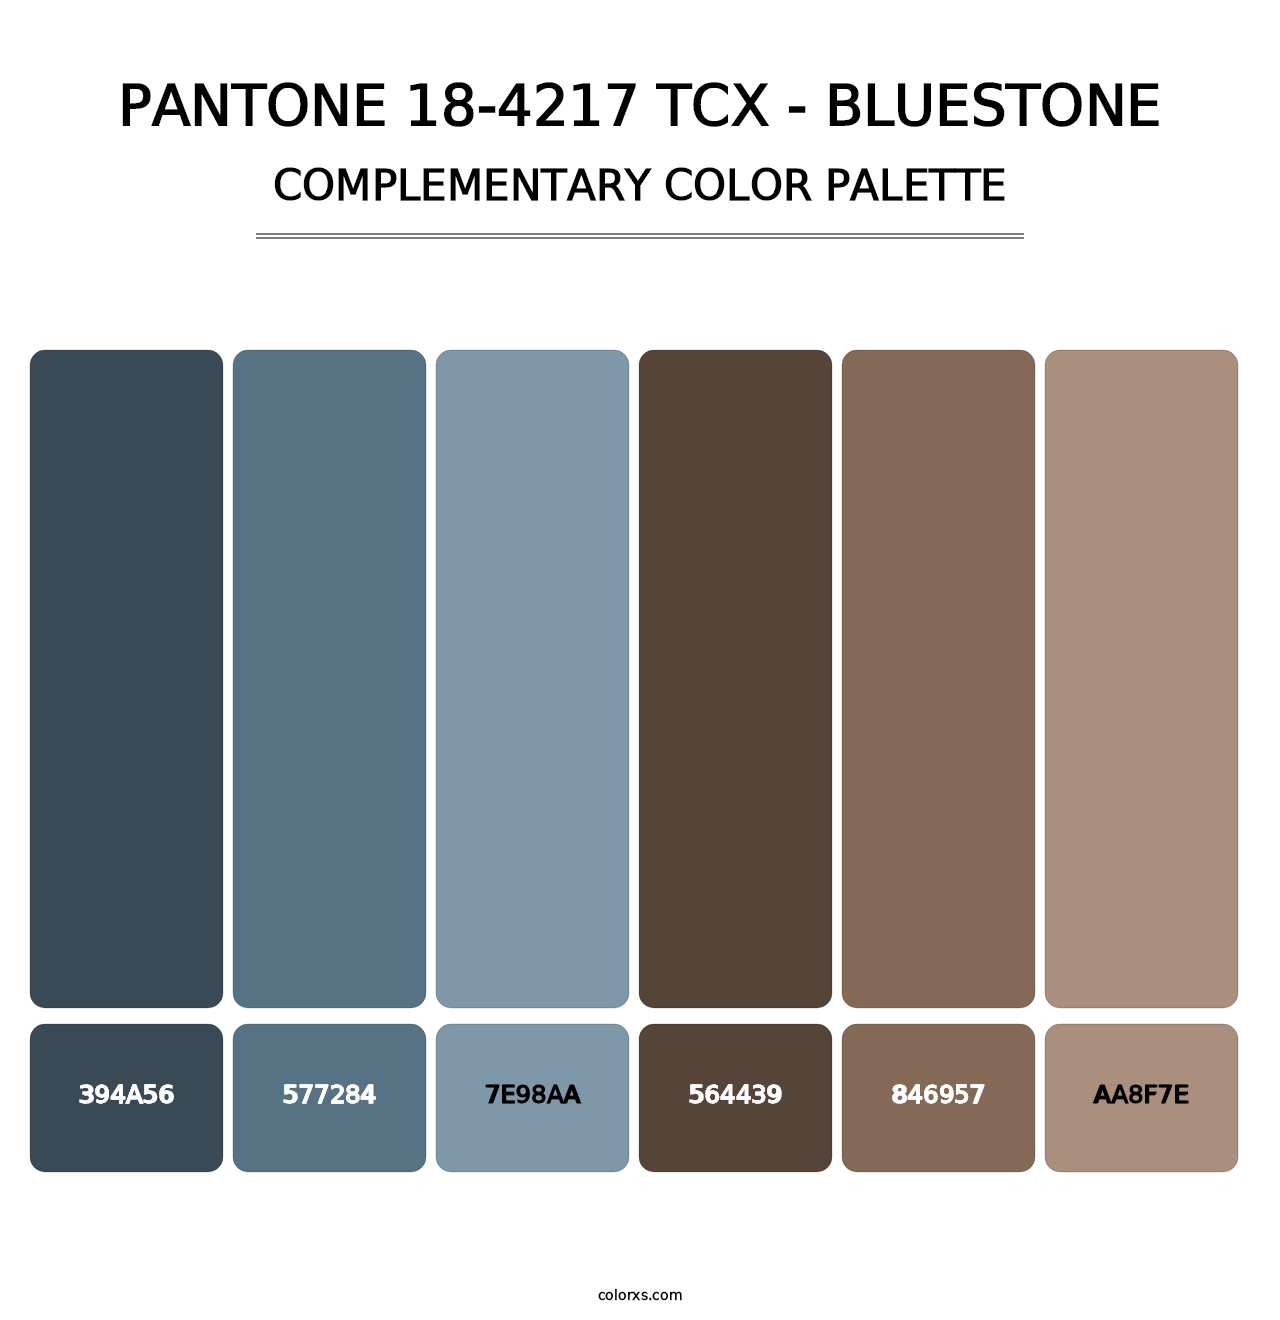 PANTONE 18-4217 TCX - Bluestone - Complementary Color Palette